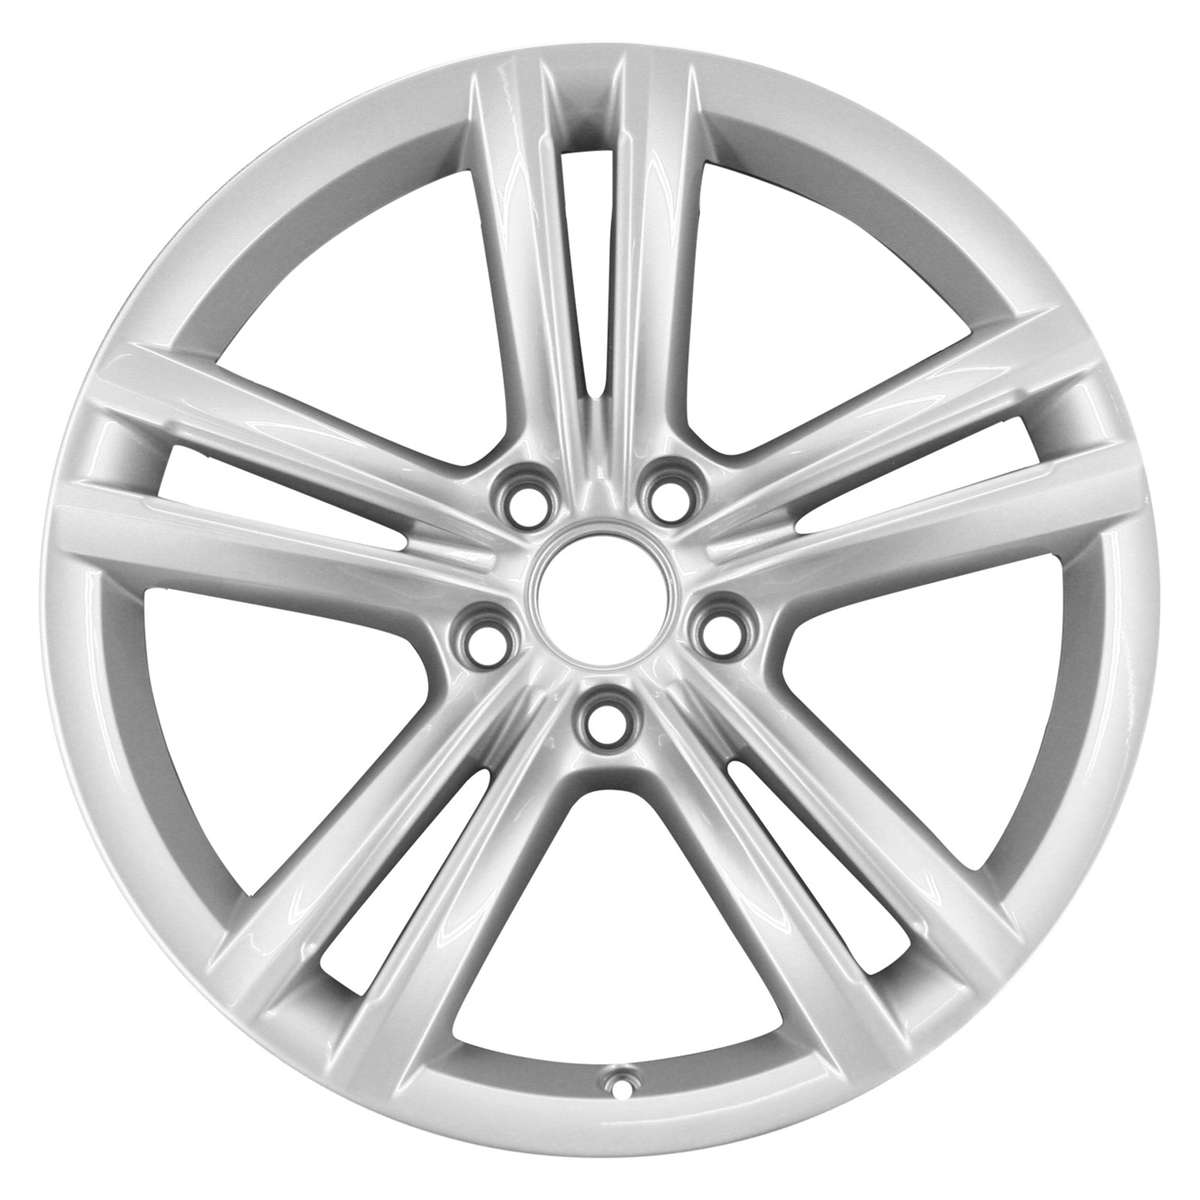 2013 Volkswagen Passat New 18" Replacement Wheel Rim RW69929S